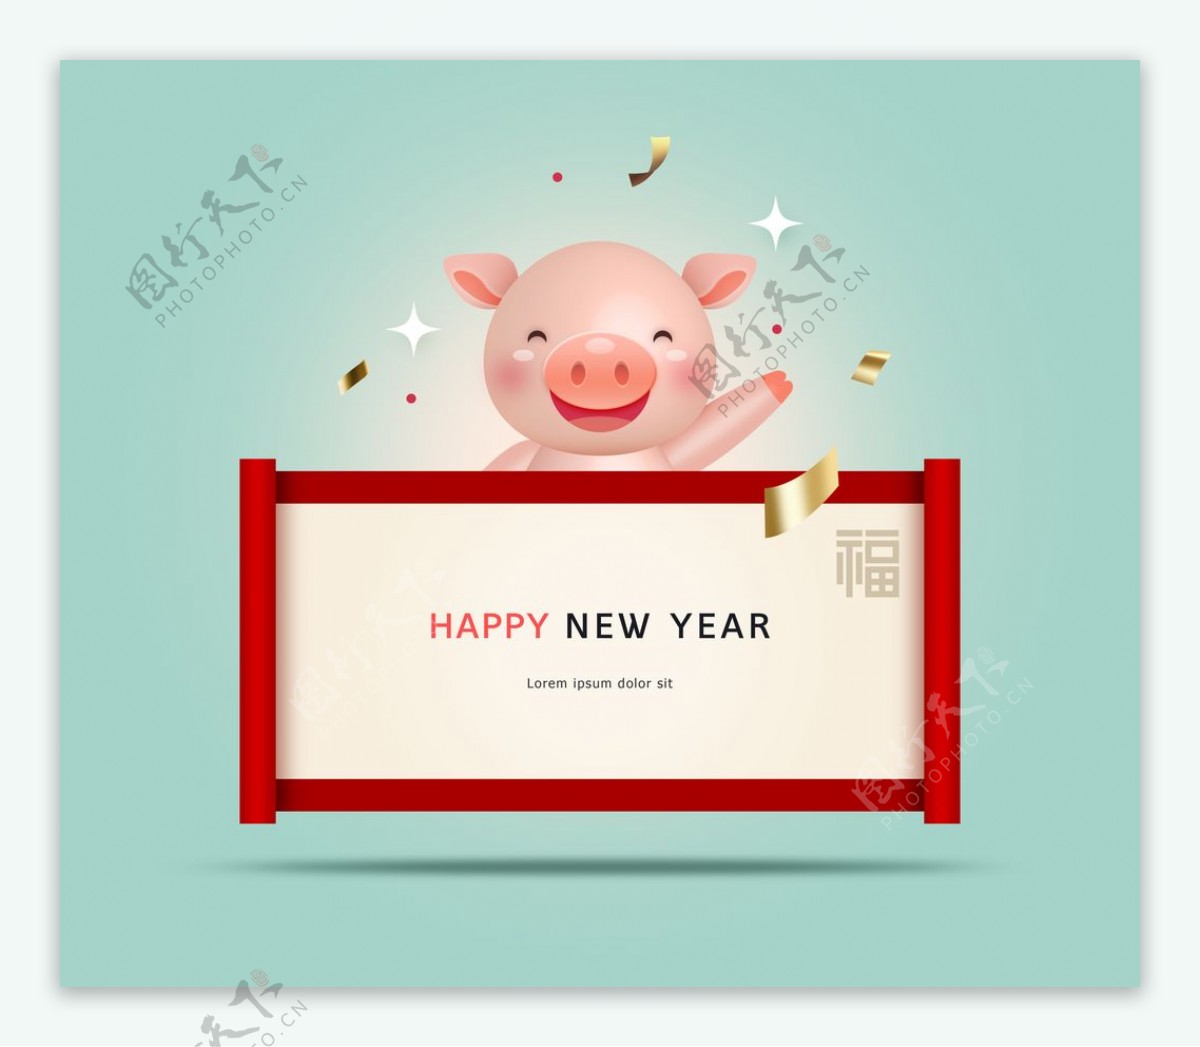 猪年新年快乐